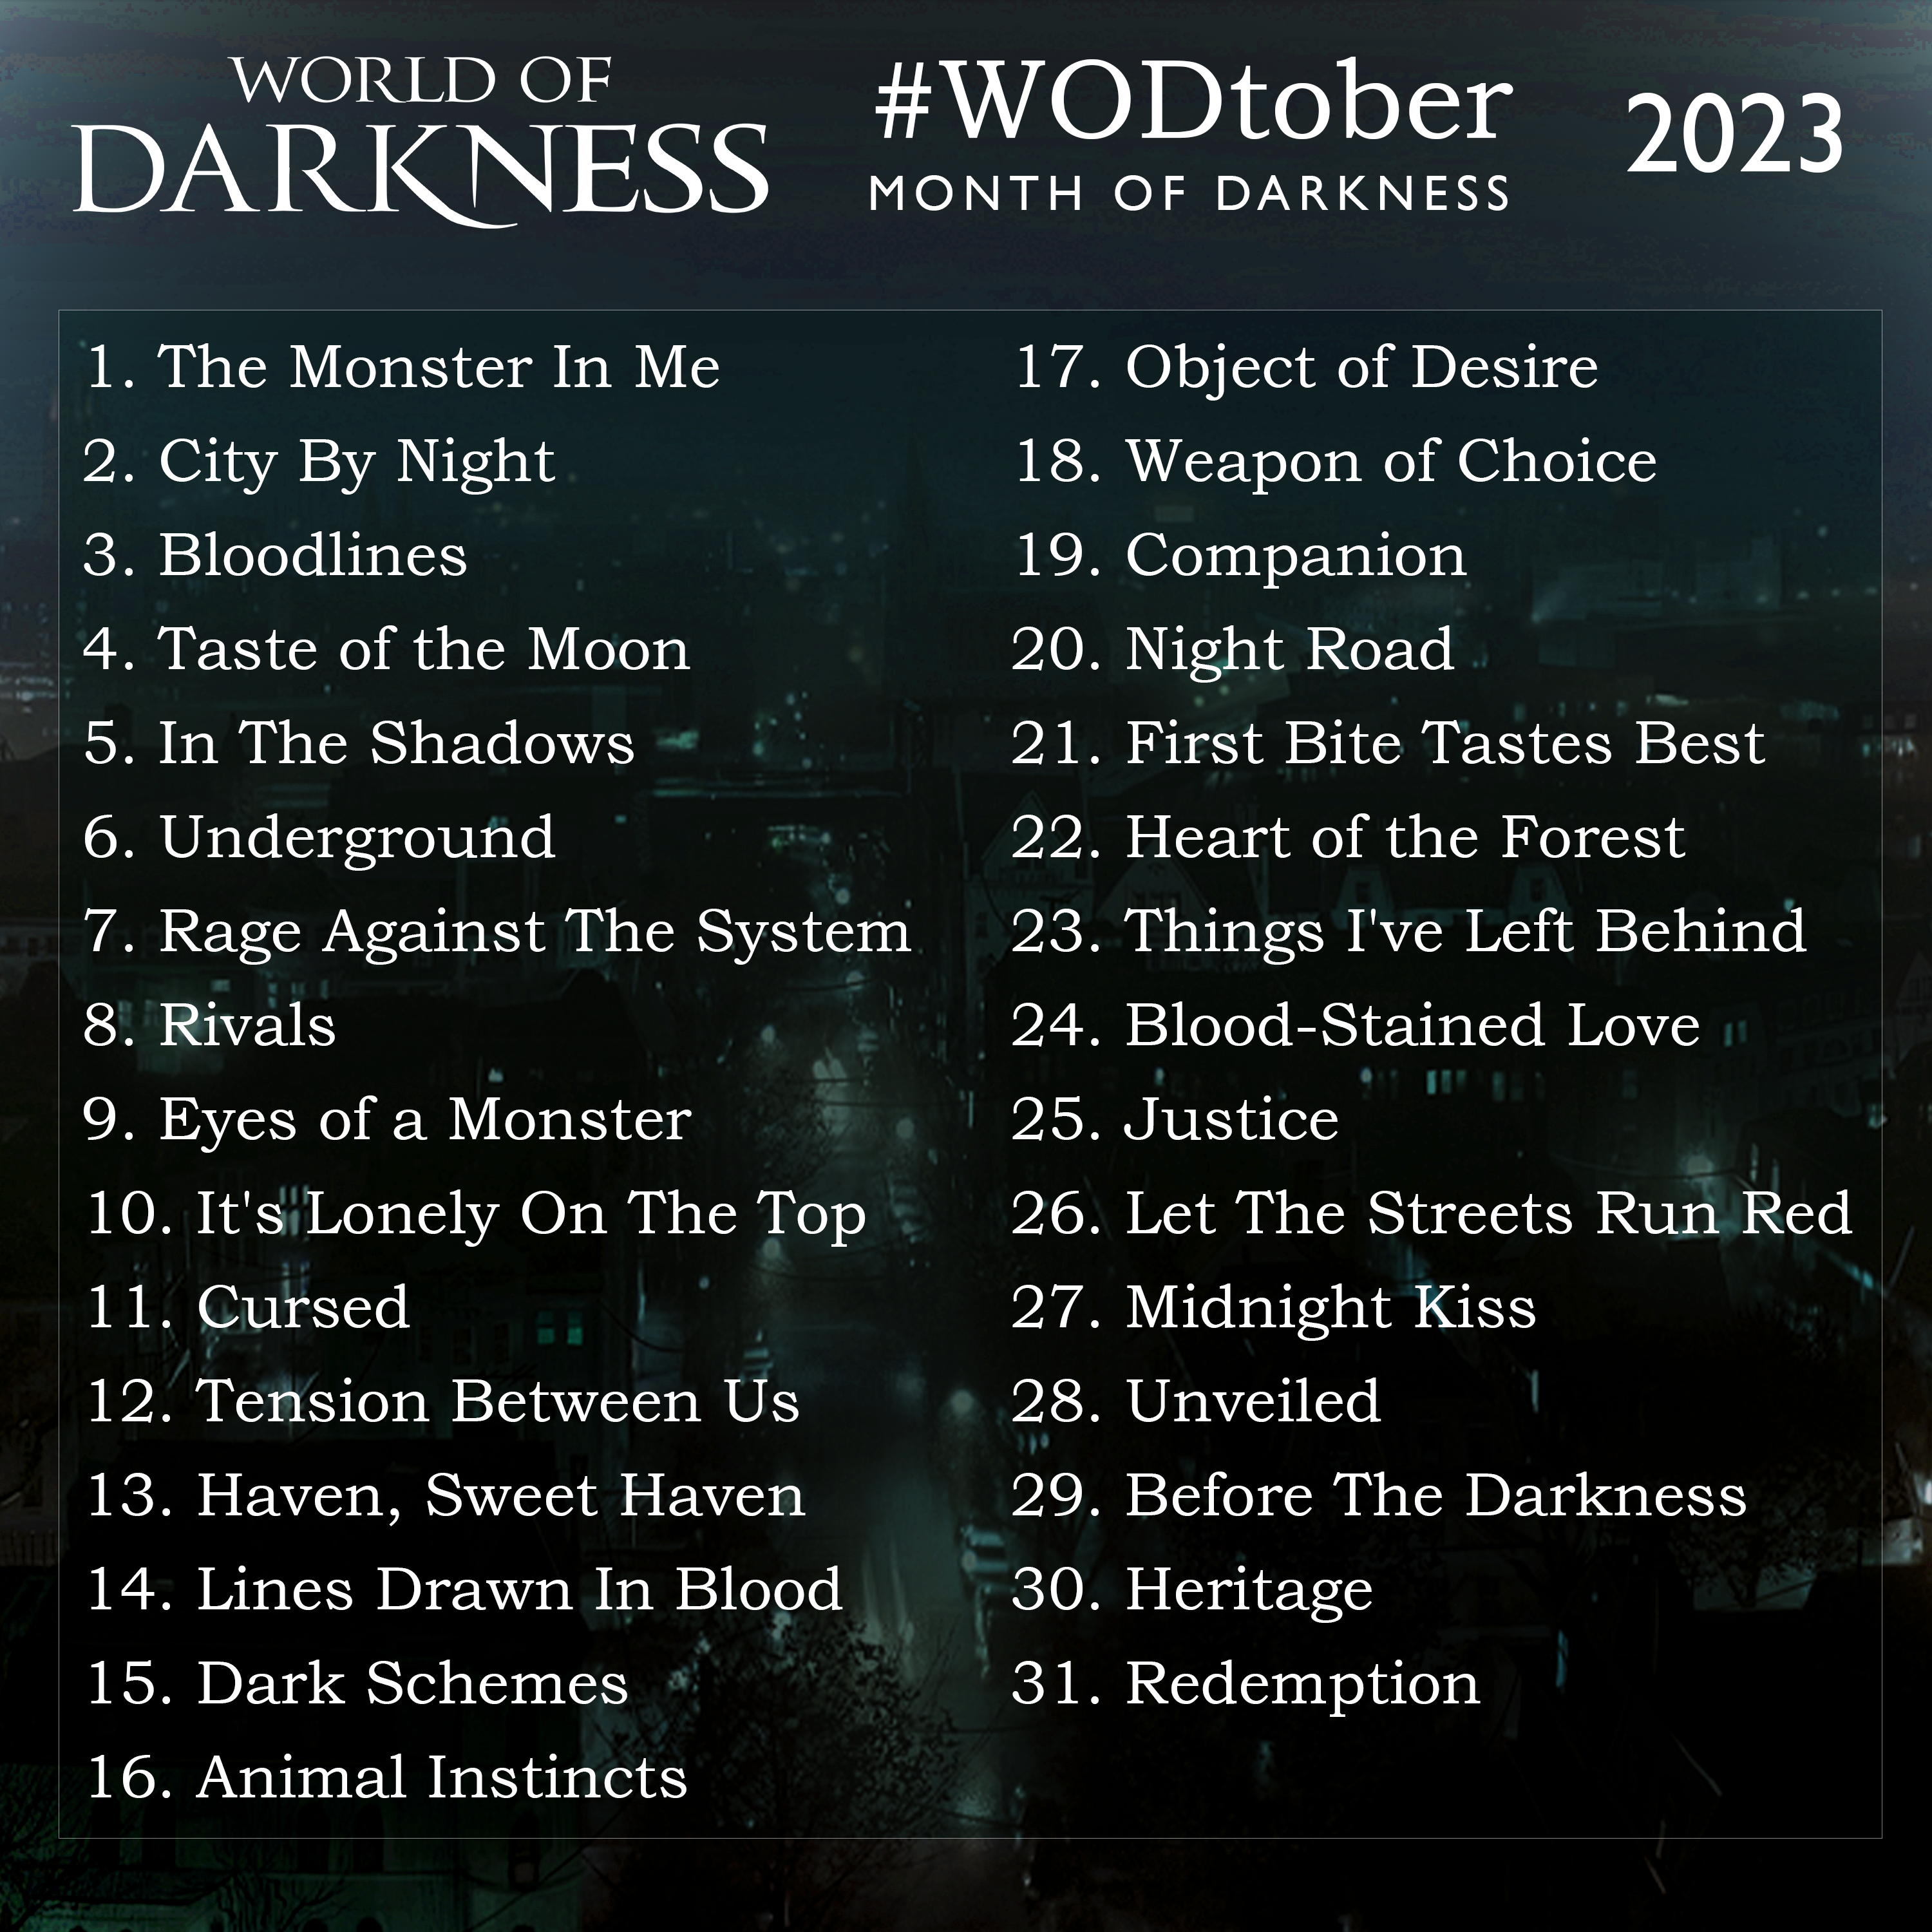 World of Darkness - Month of Darkness WODtober Dark